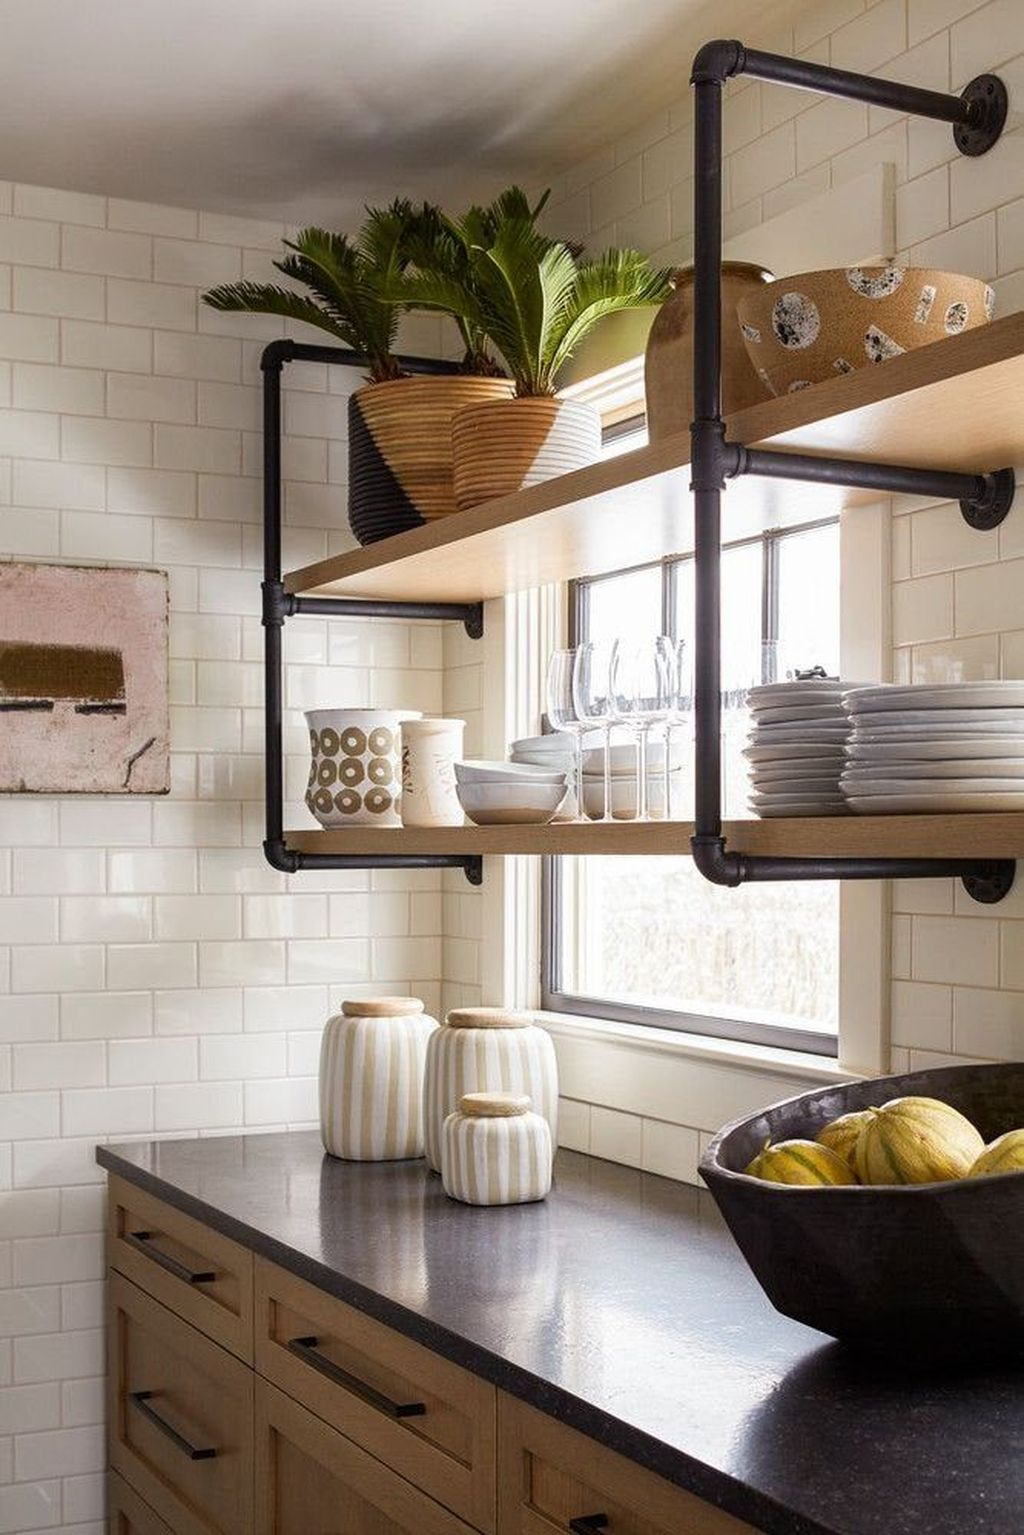 Wonderful Industrial Kitchen Shelf Design Ideas To Organize Your Kitchen19